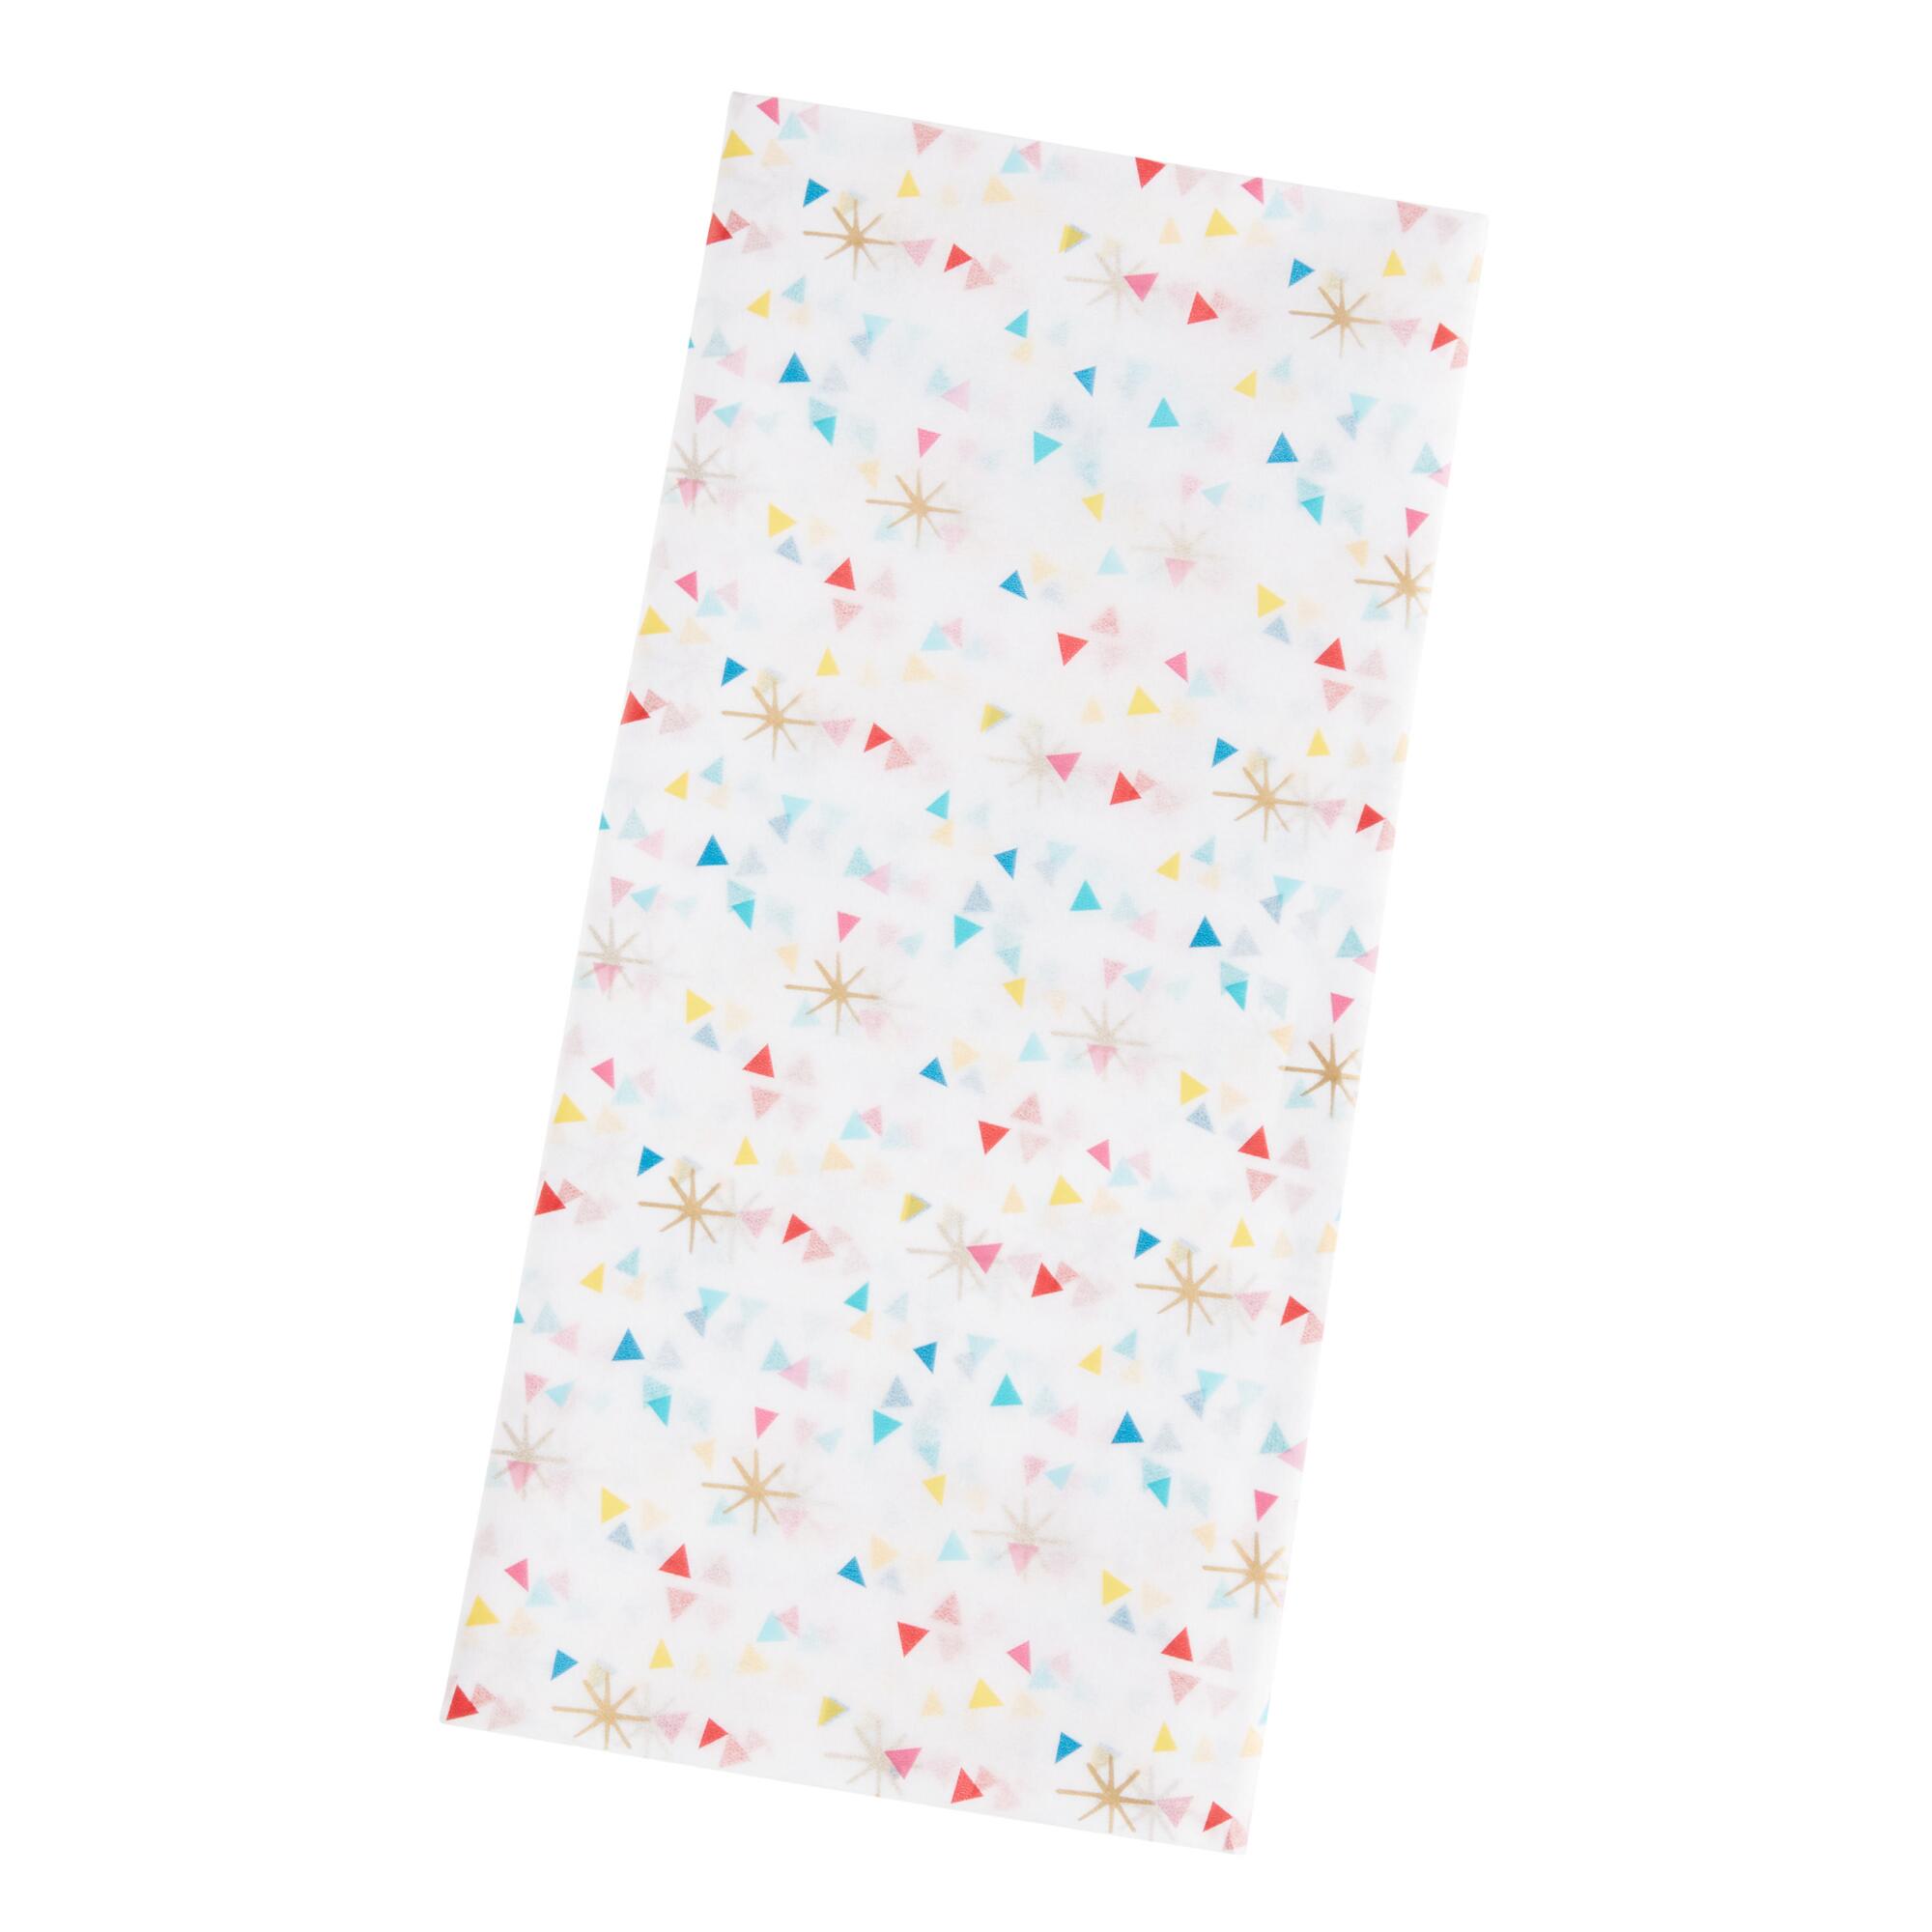 Multicolor Confetti Tissue Paper Set of 2 by World Market